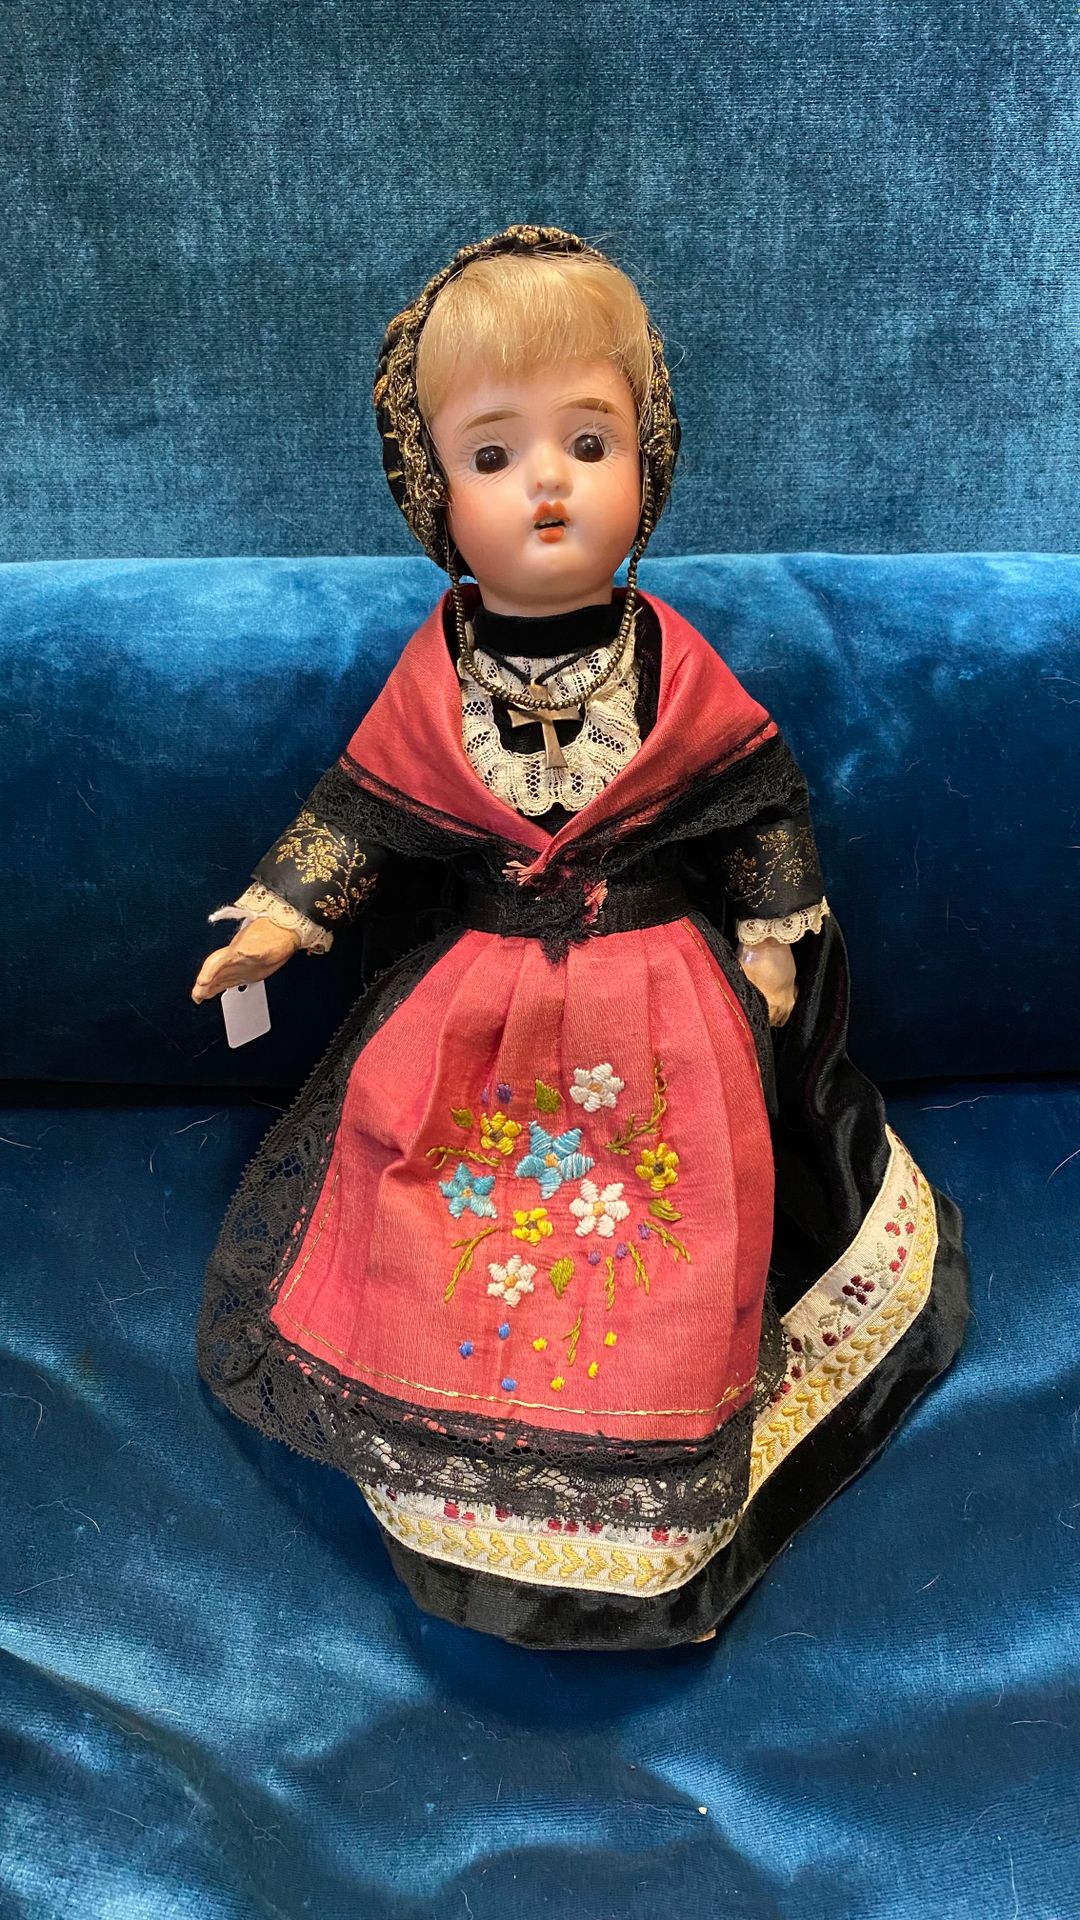 Null 德国地区的娃娃，有饼干头，张着嘴，身体是复合材料。民俗服装。

H.33厘米

(磨损)